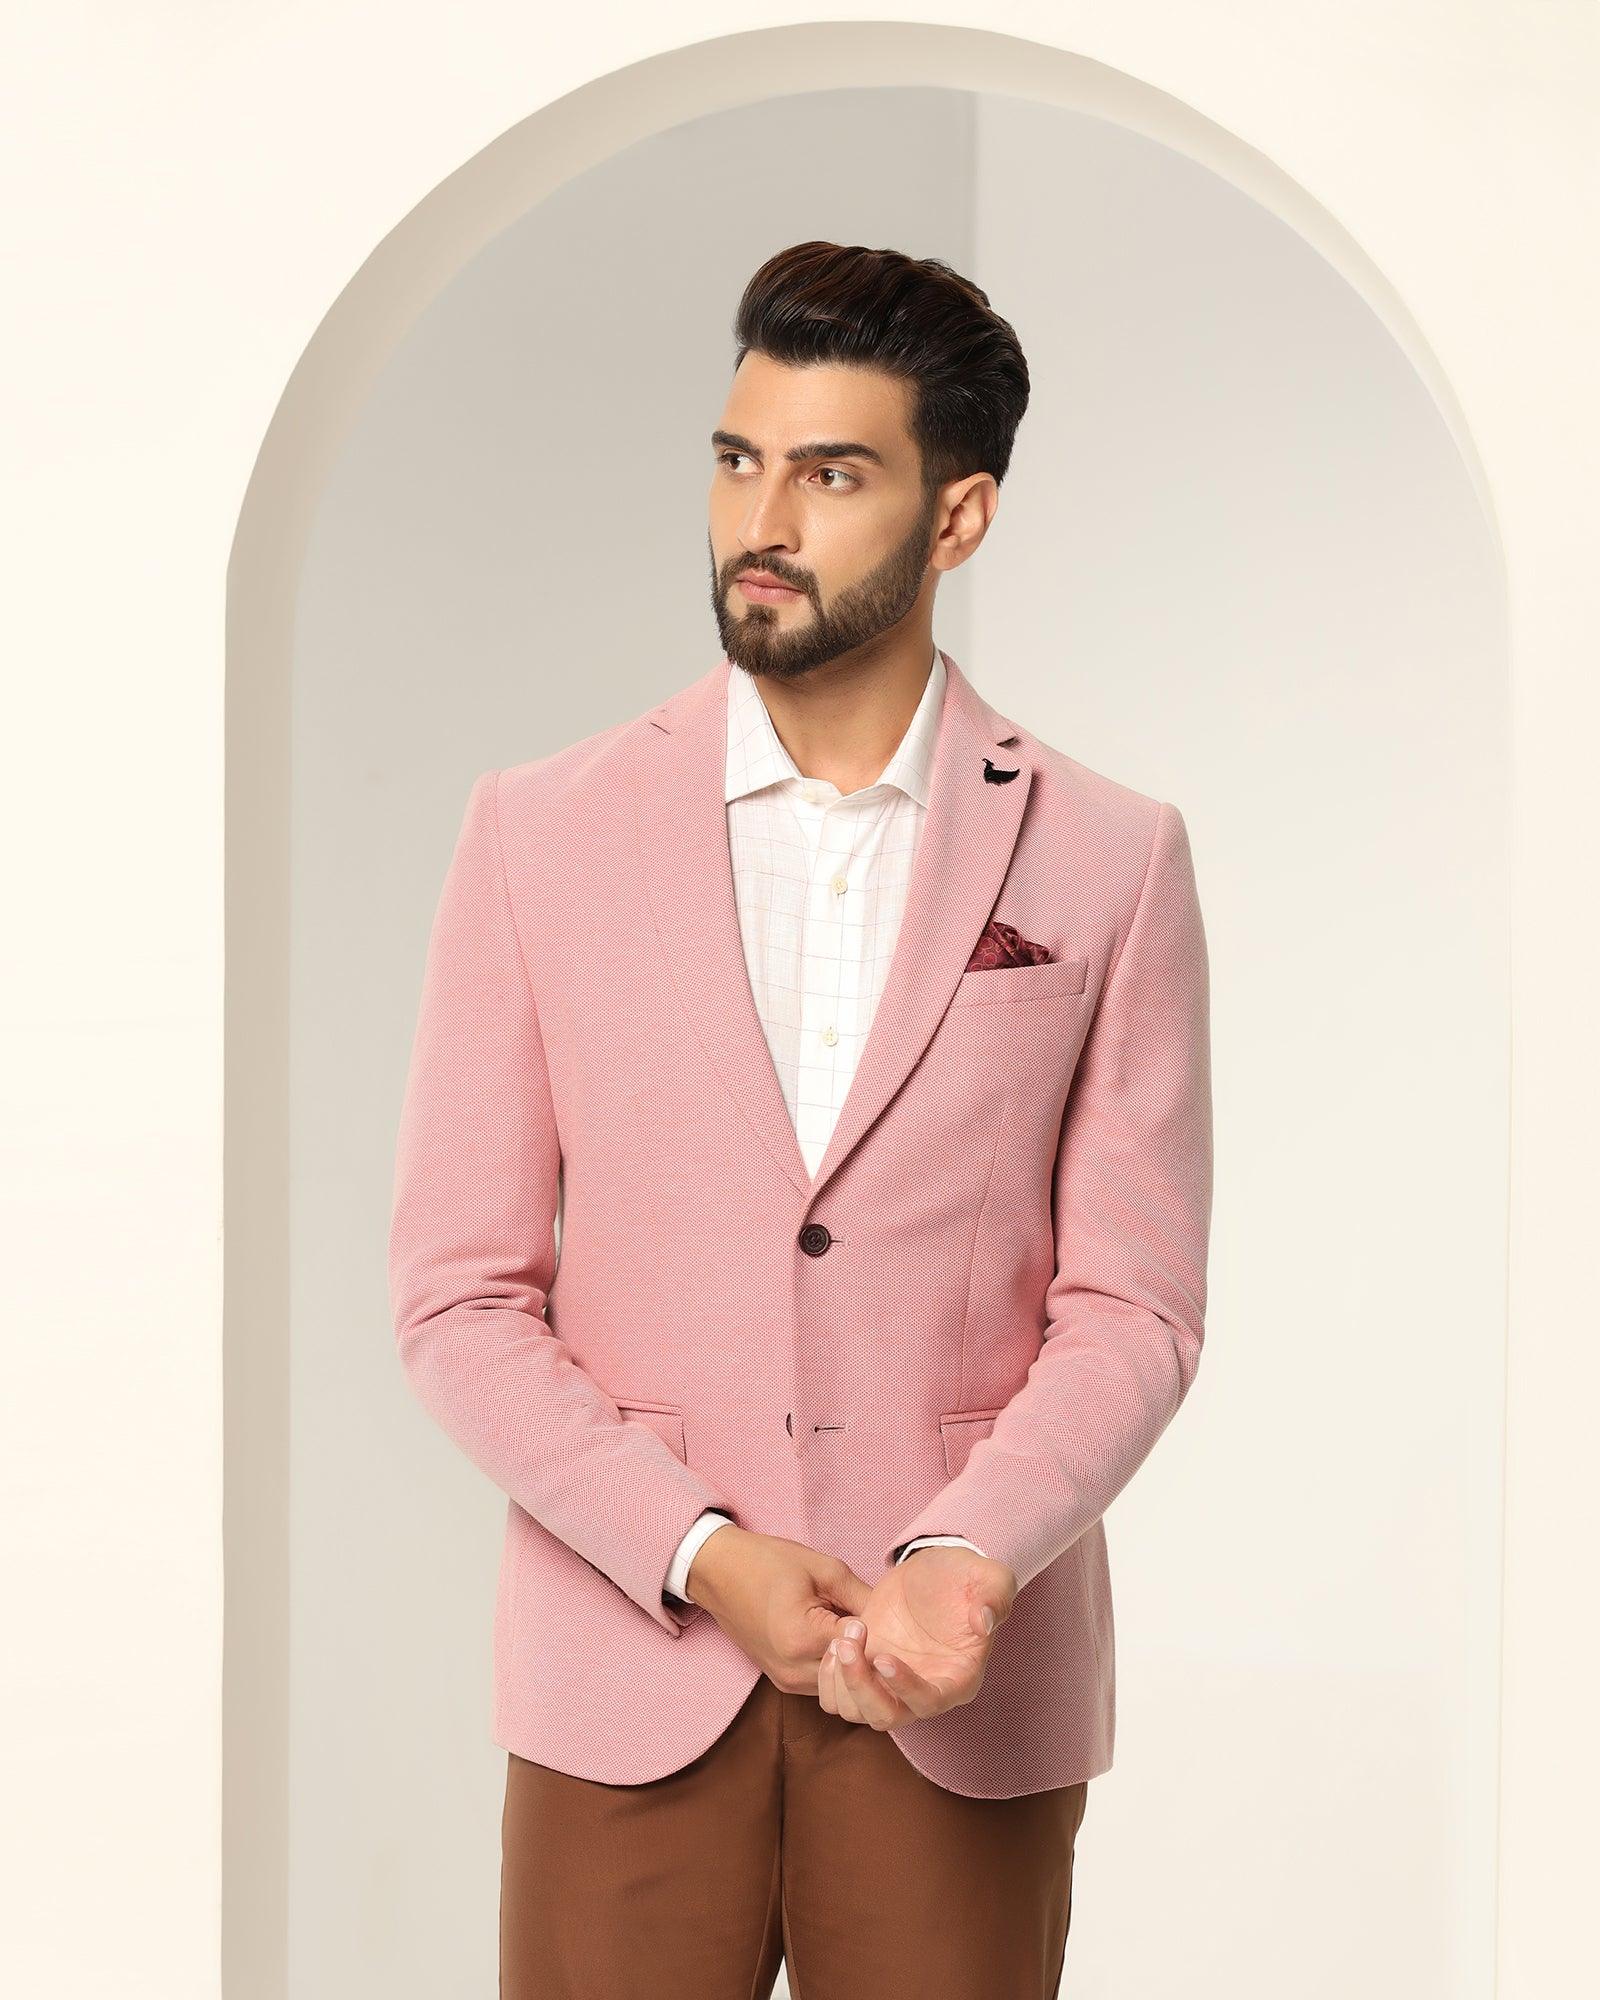 Casual Pink Textured Blazer - Ben